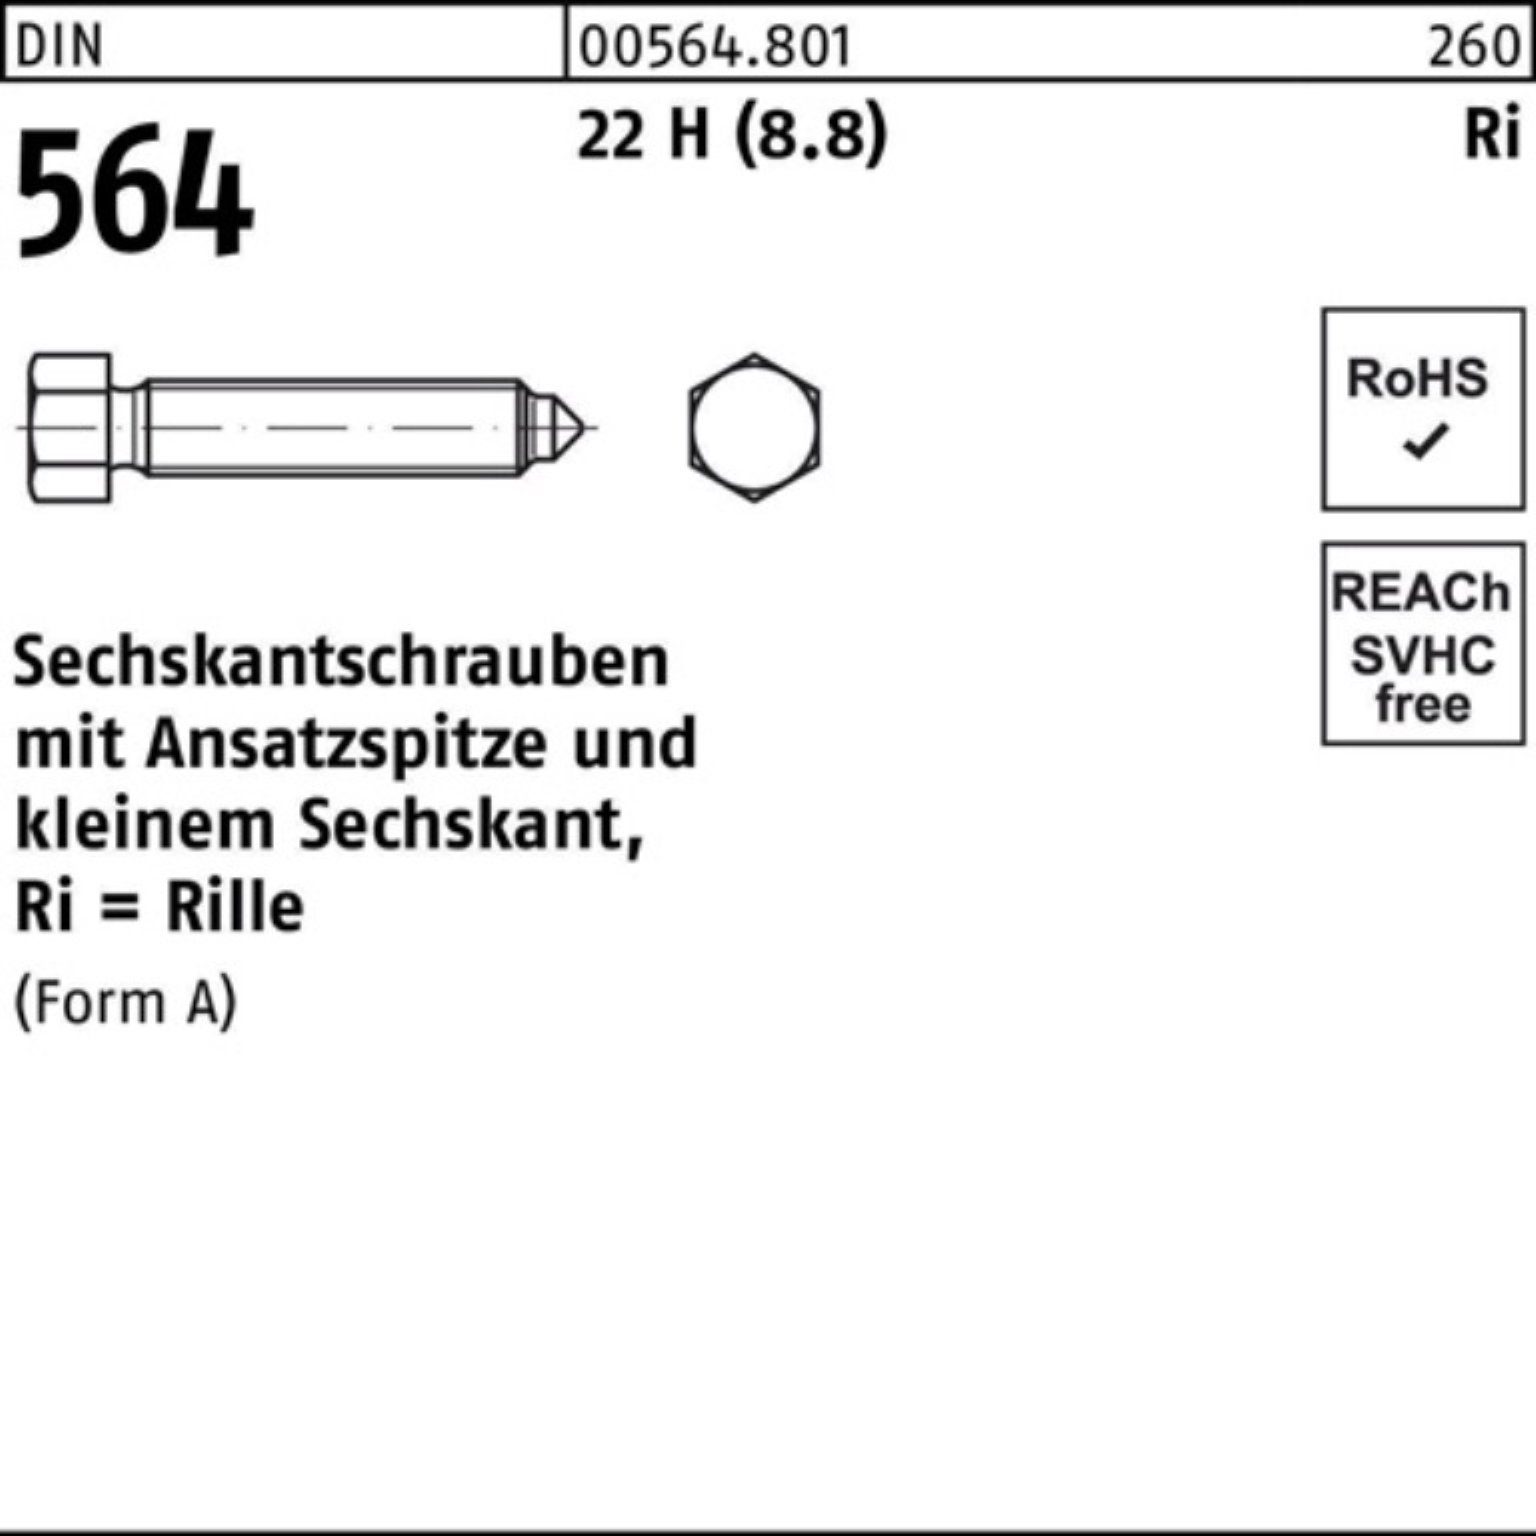 Reyher Sechskantschraube 100er Pack Sechskantschraube DIN 564 Ansatzspitze AM 16x 50 22 H (8.8)